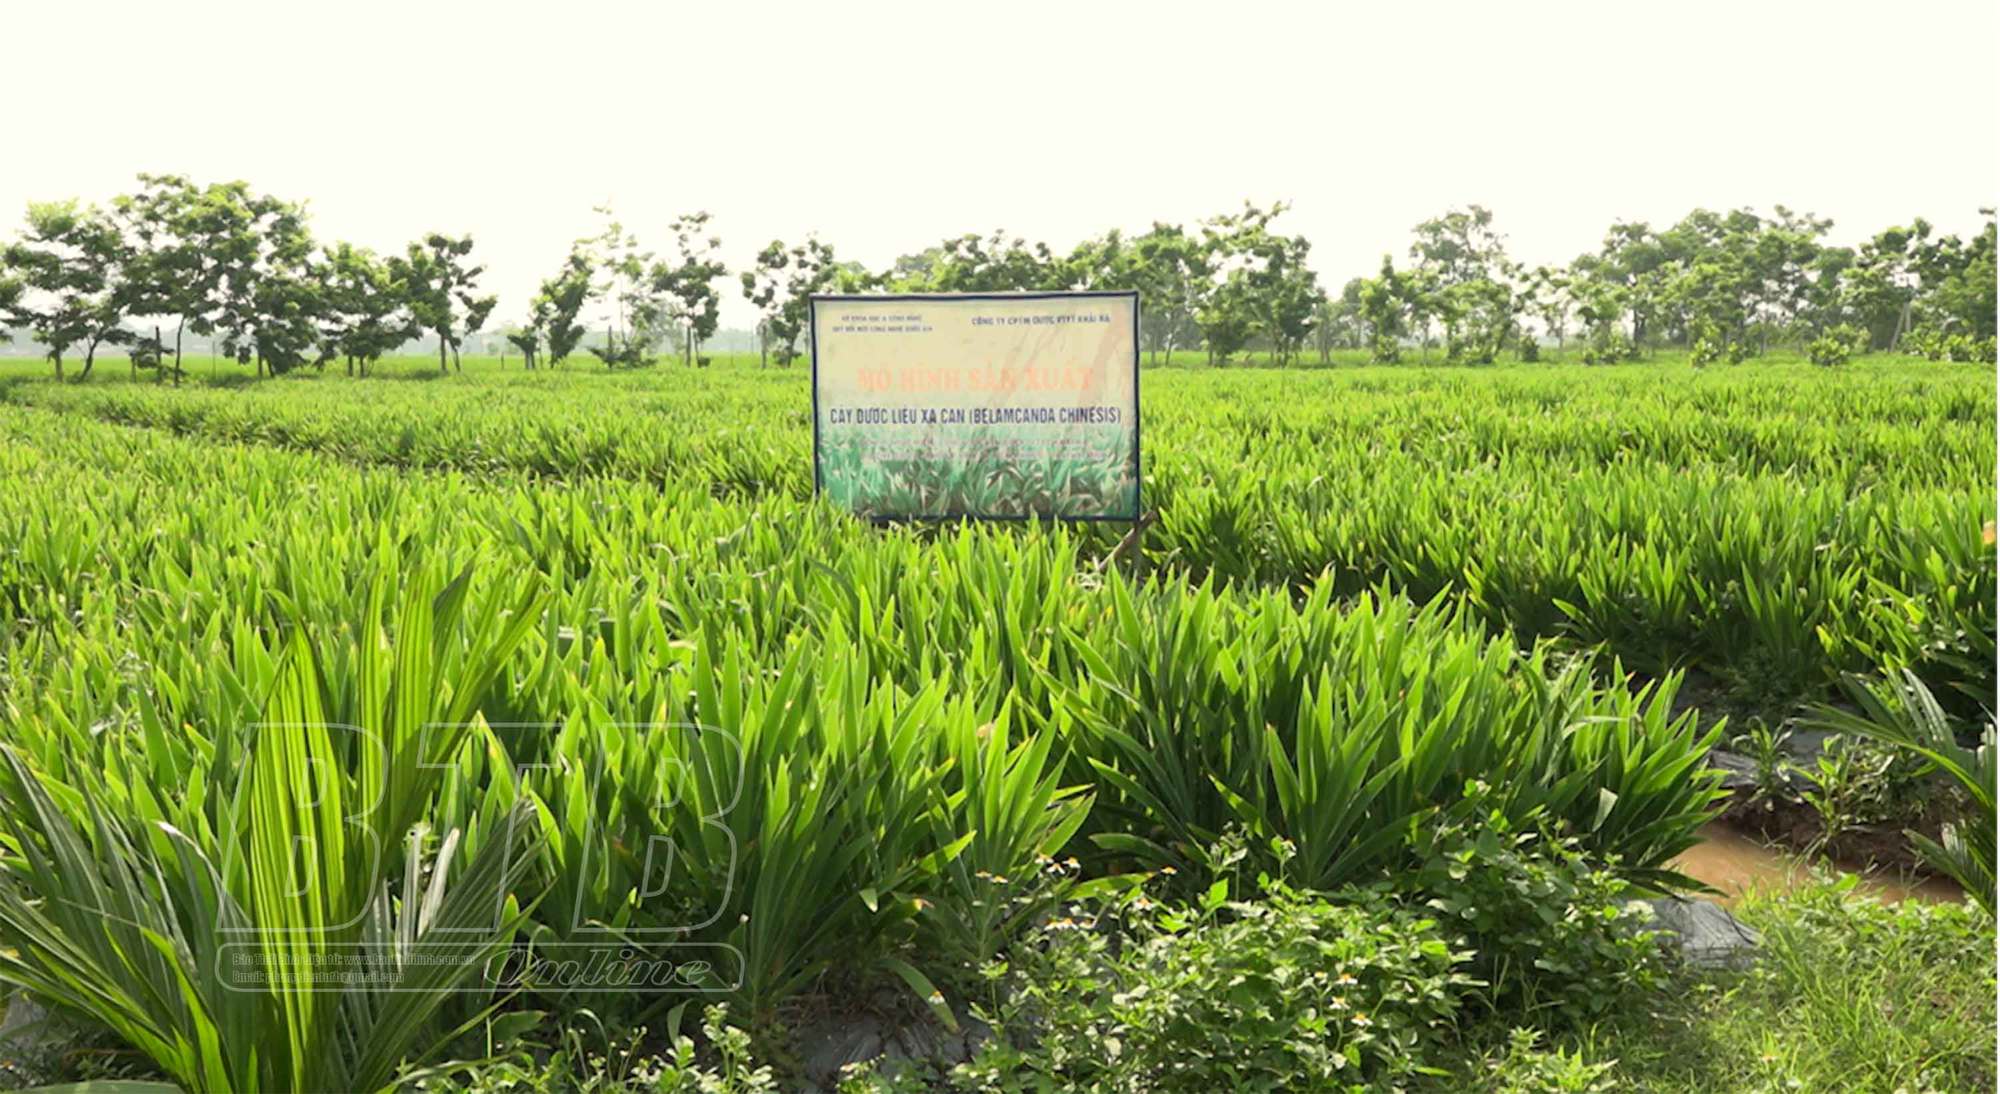 Trồng 5 loại cây dược liệu ở 8ha đất ruộng, một nông dân Thái Bình thành tỷ phú giàu nhất làng - Ảnh 3.